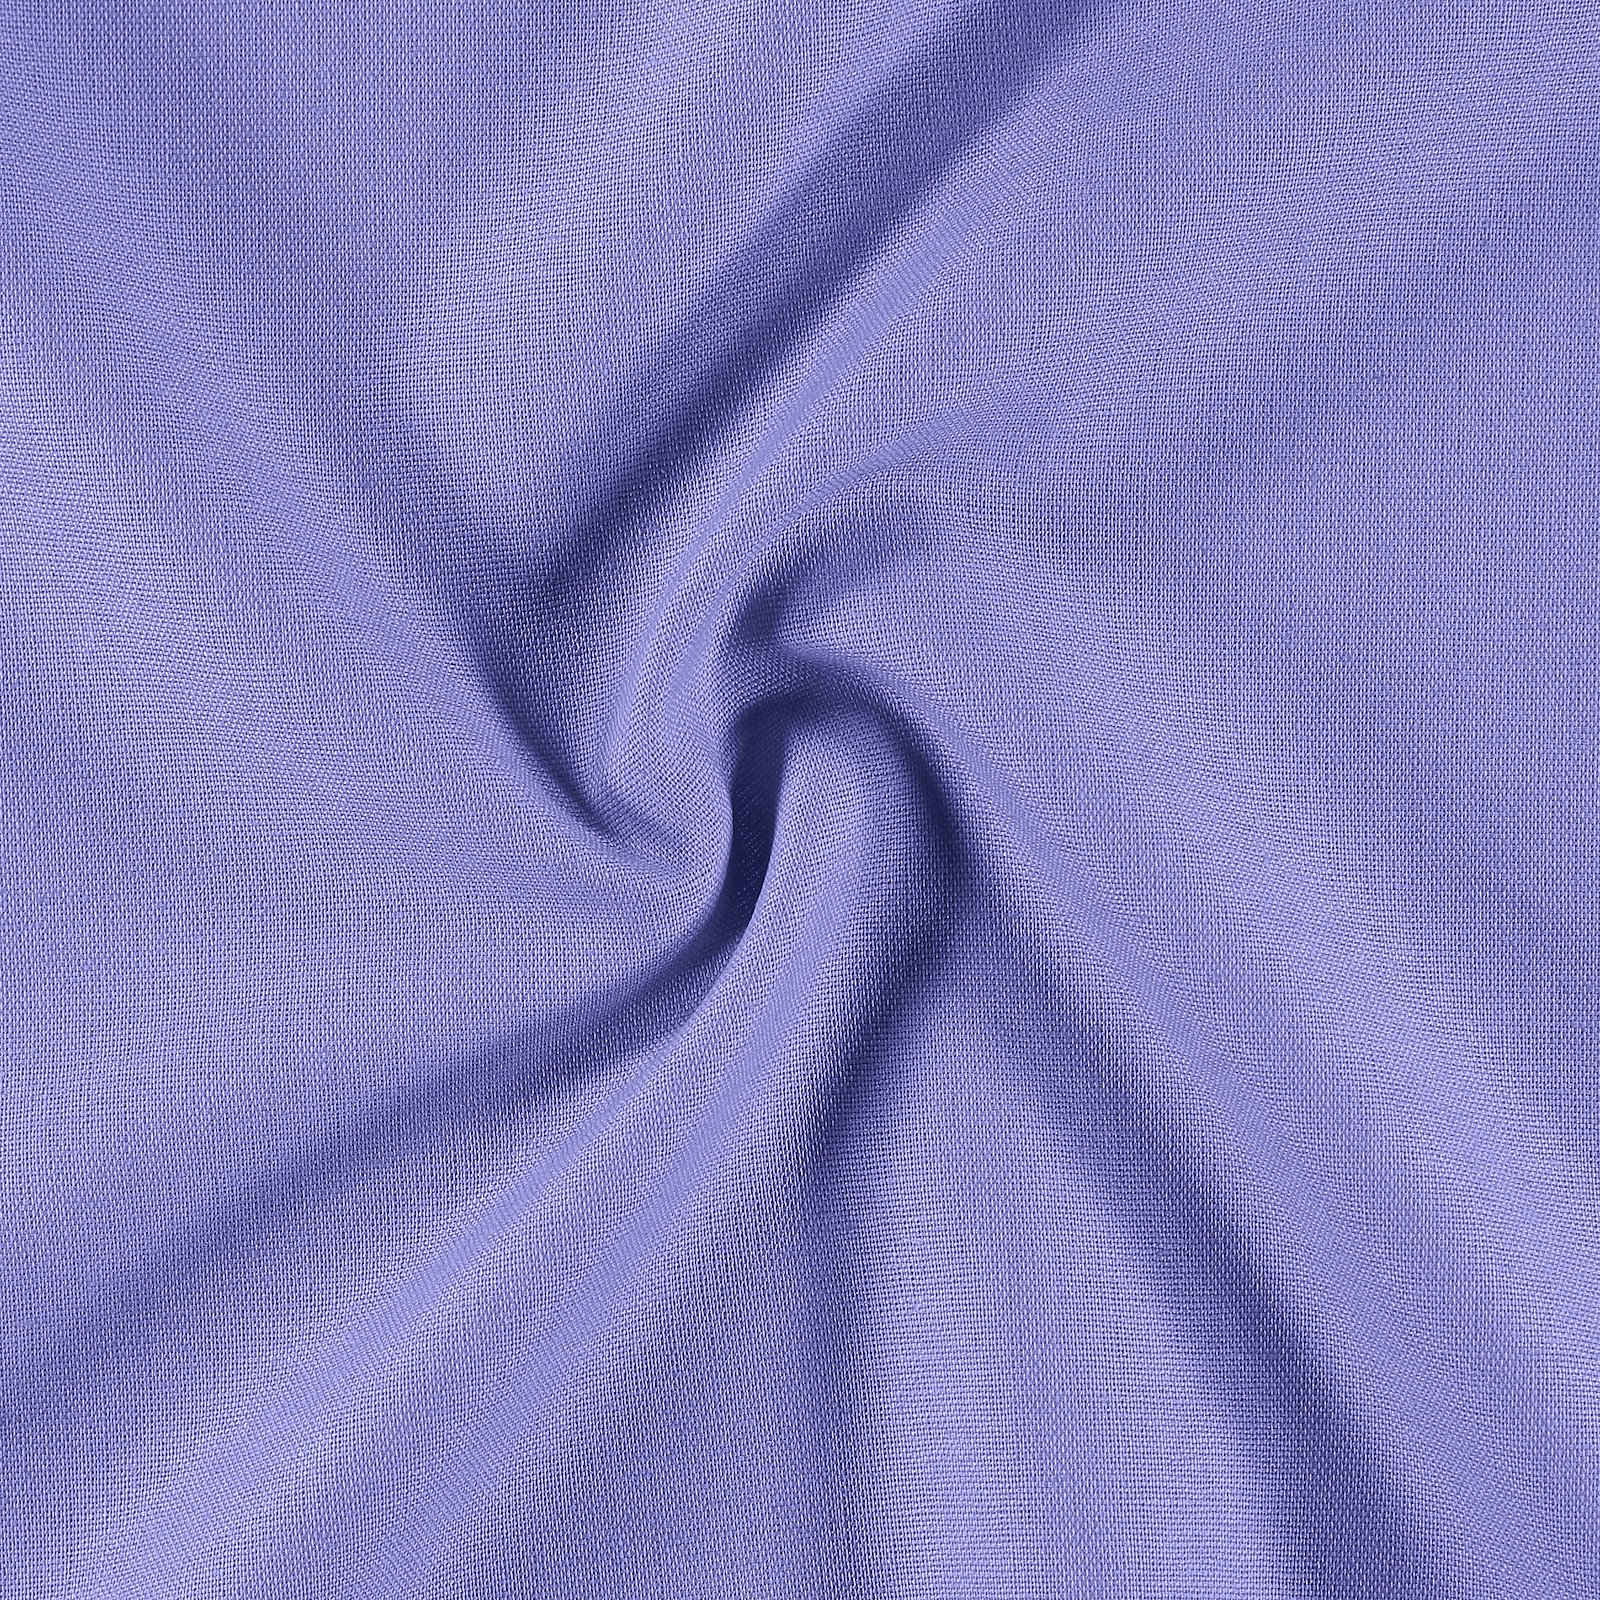 Cotton/Linen Blend - Purple